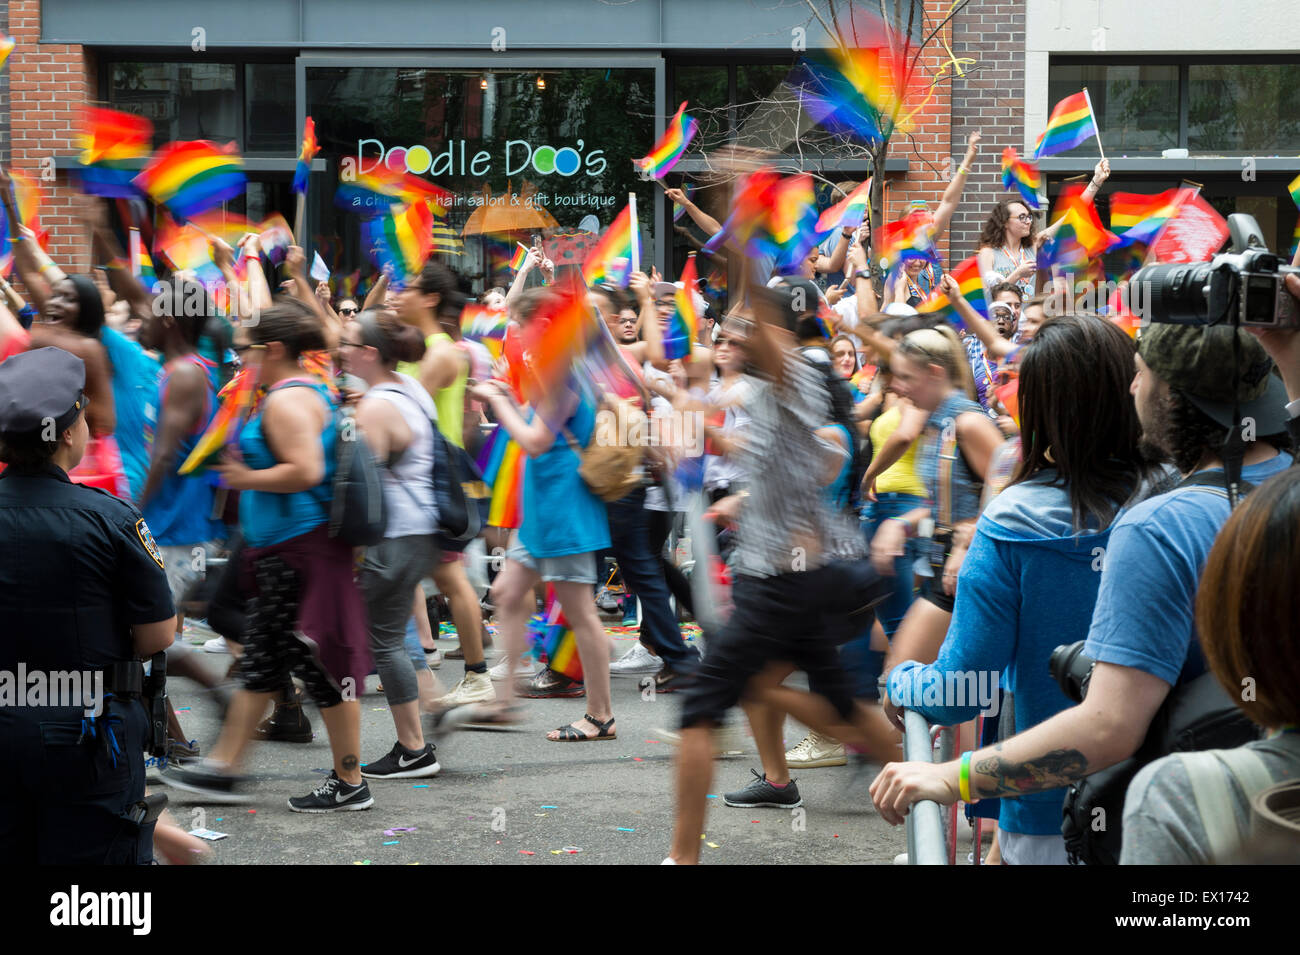 La VILLE DE NEW YORK, USA - 28 juin 2015 : lors de l'Assemblée célébrants gay pride parade des drapeaux arc-en-ciel vague comme ils passent les spectateurs. Banque D'Images